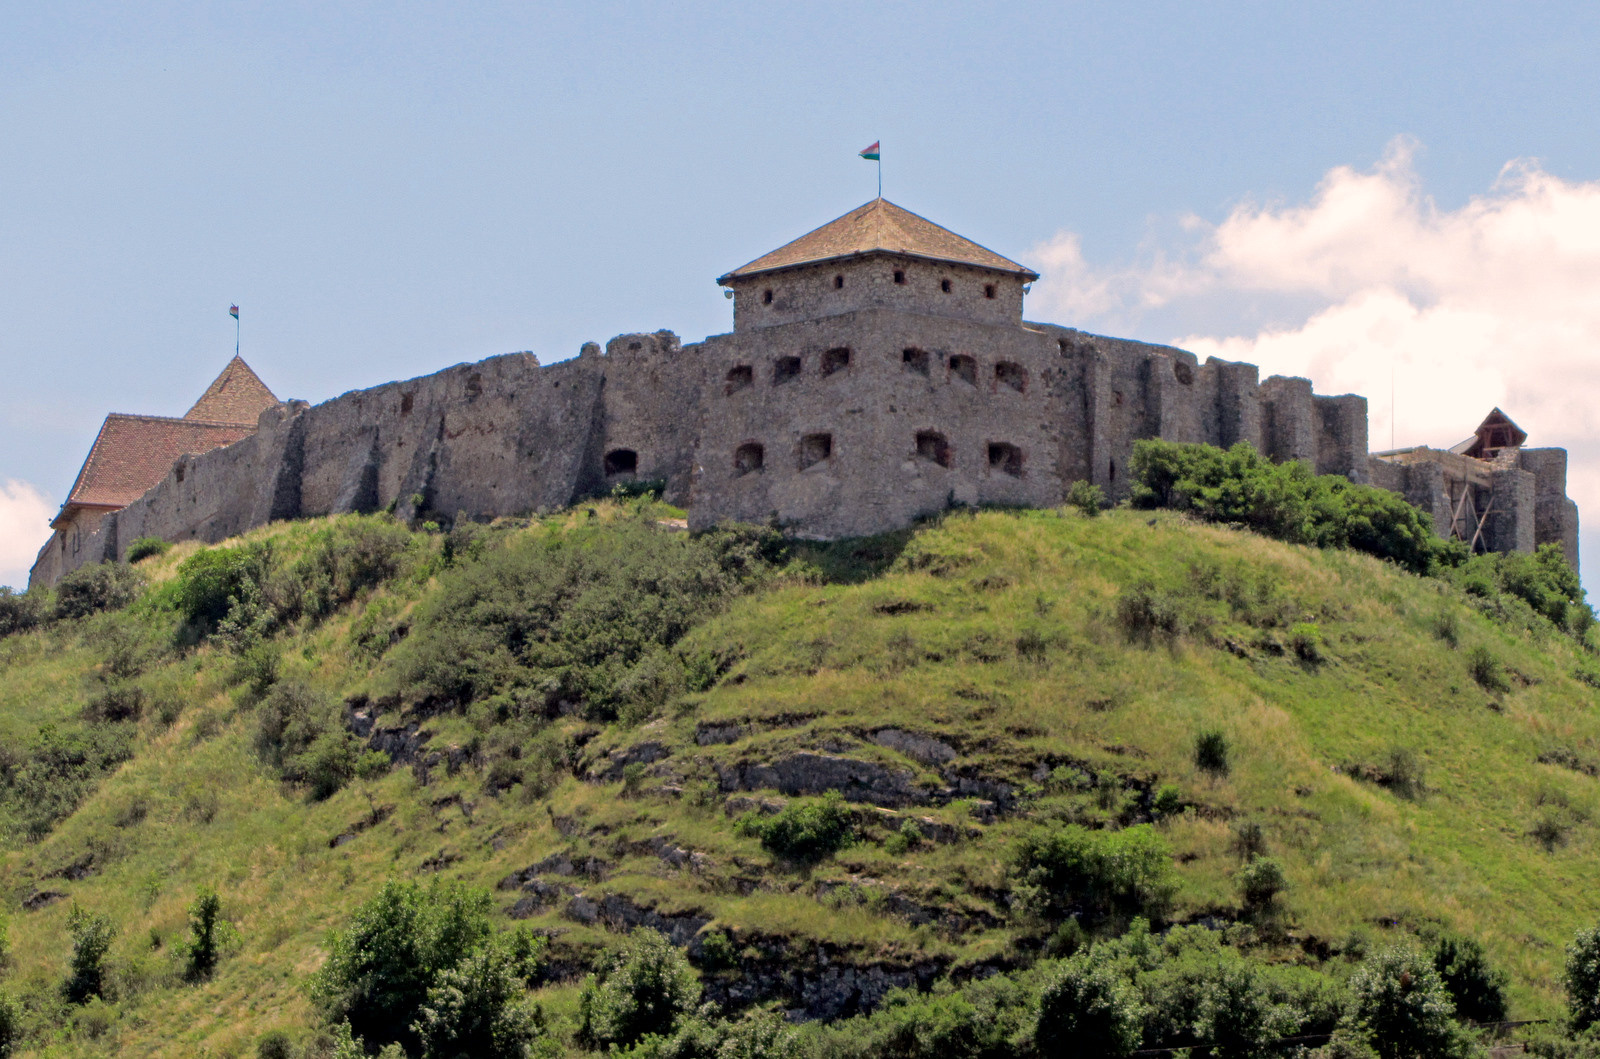 Xploring Hungary Video: Sümeg Castle